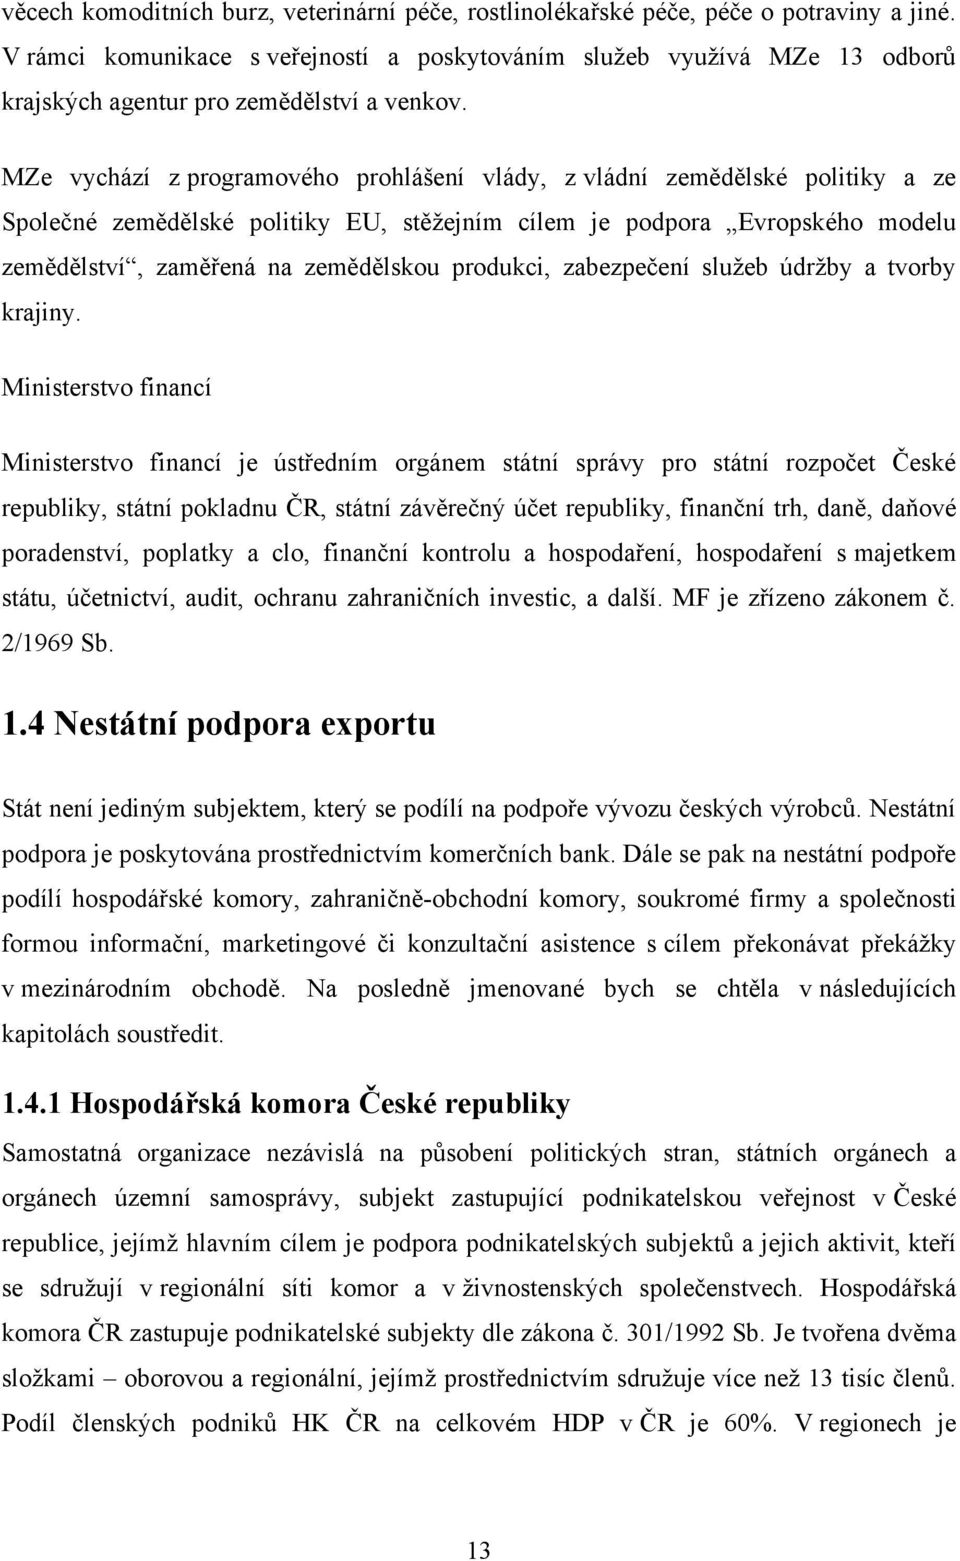 Nové formy podpory exportu v ČR - PDF Stažení zdarma